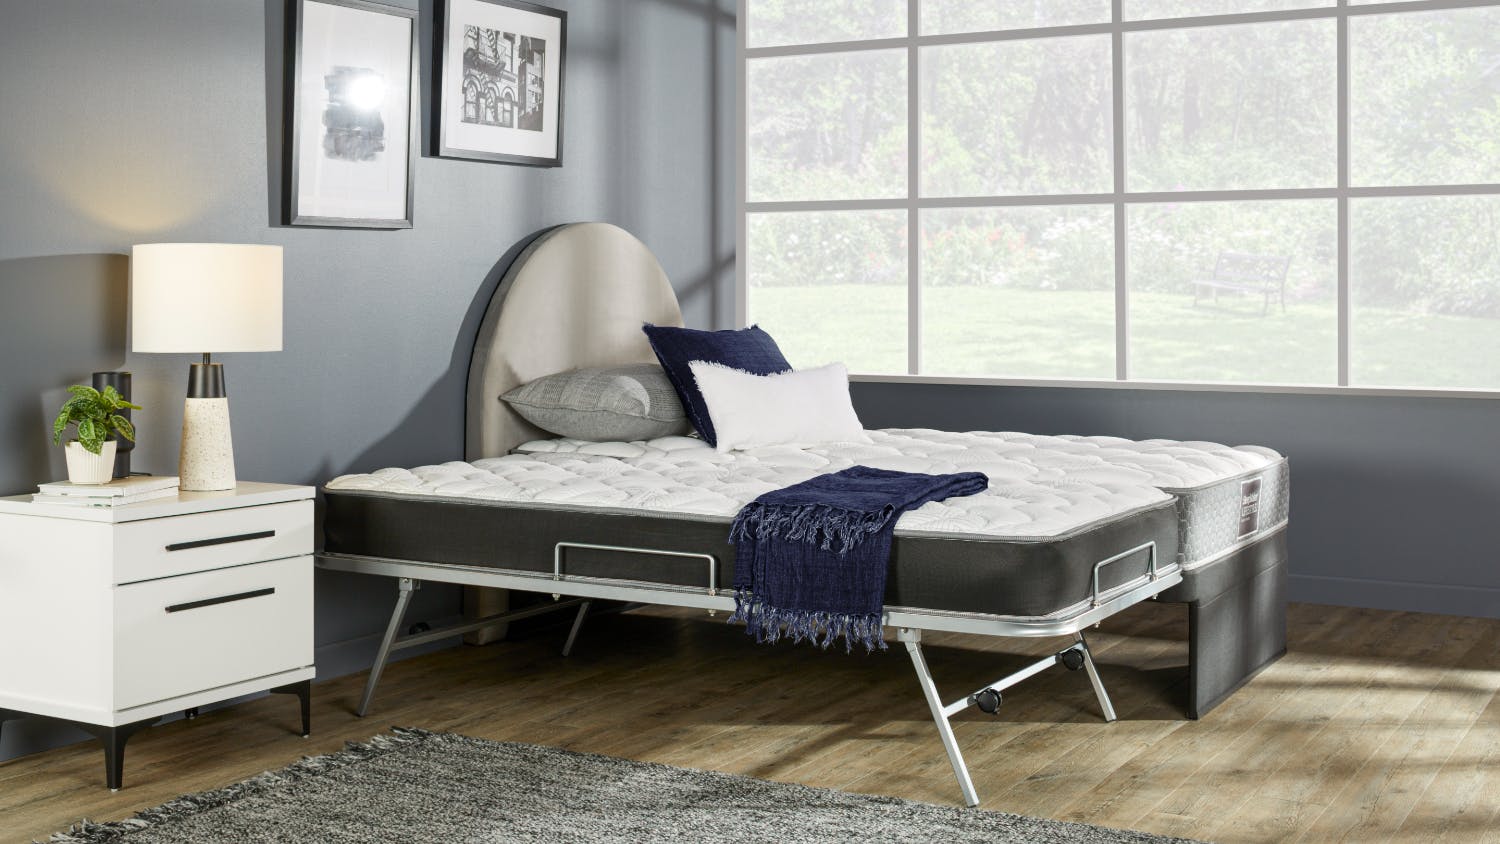 Posture King Single Trundler Bed by SleepMaker